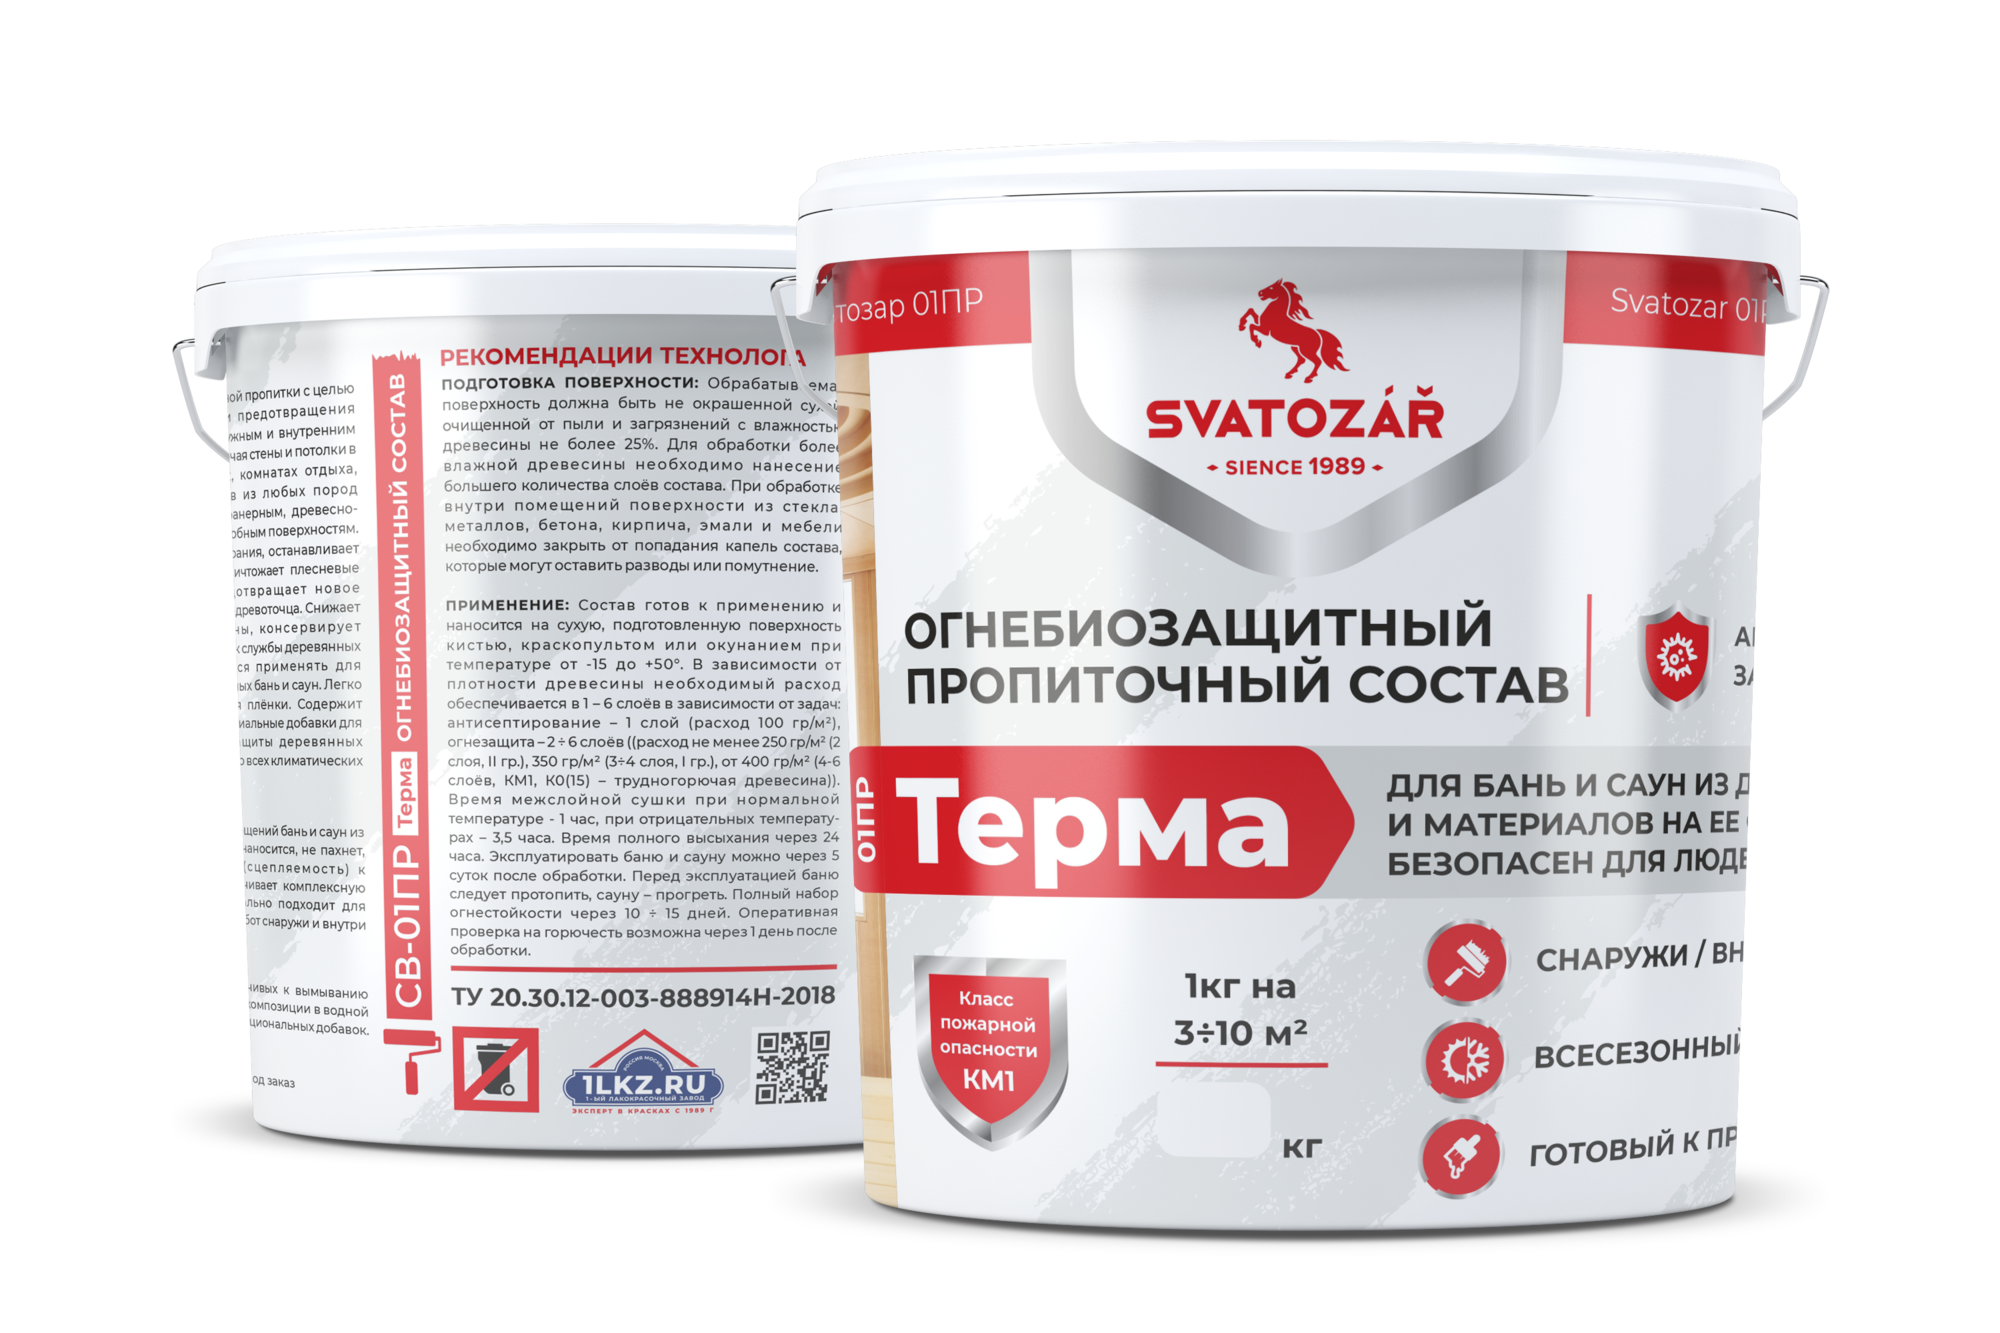 Огнебиозащитный пропиточный состав для бань и саун Бесцветный, 5 кг Finlux SVATOZAR-Святозар СВ- 01ПР Терма